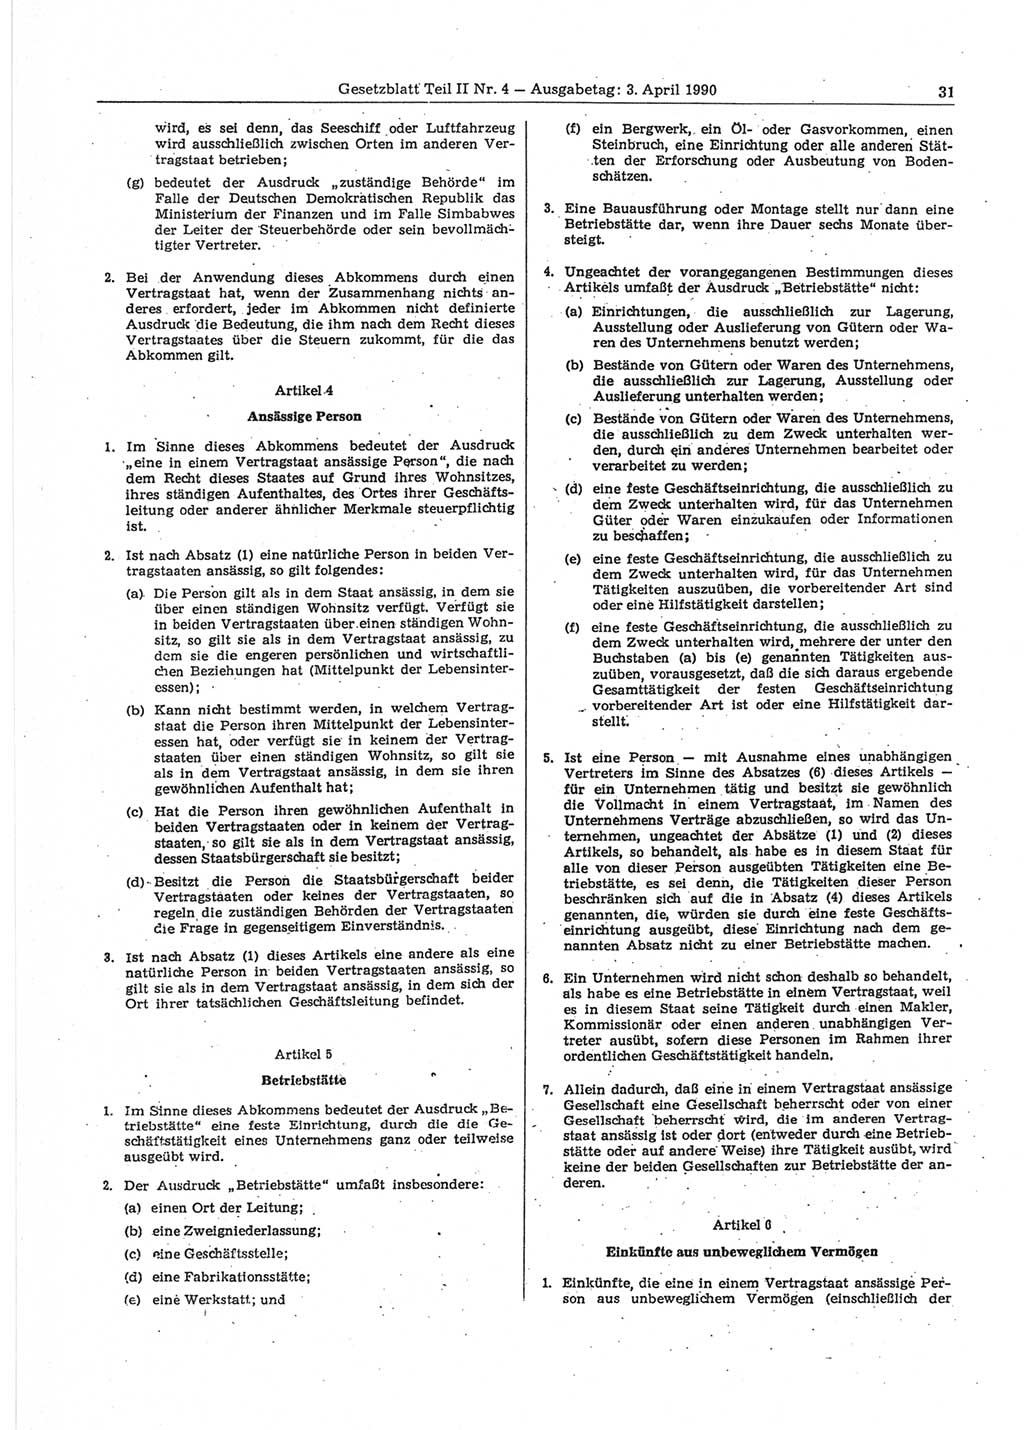 Gesetzblatt (GBl.) der Deutschen Demokratischen Republik (DDR) Teil ⅠⅠ 1990, Seite 31 (GBl. DDR ⅠⅠ 1990, S. 31)